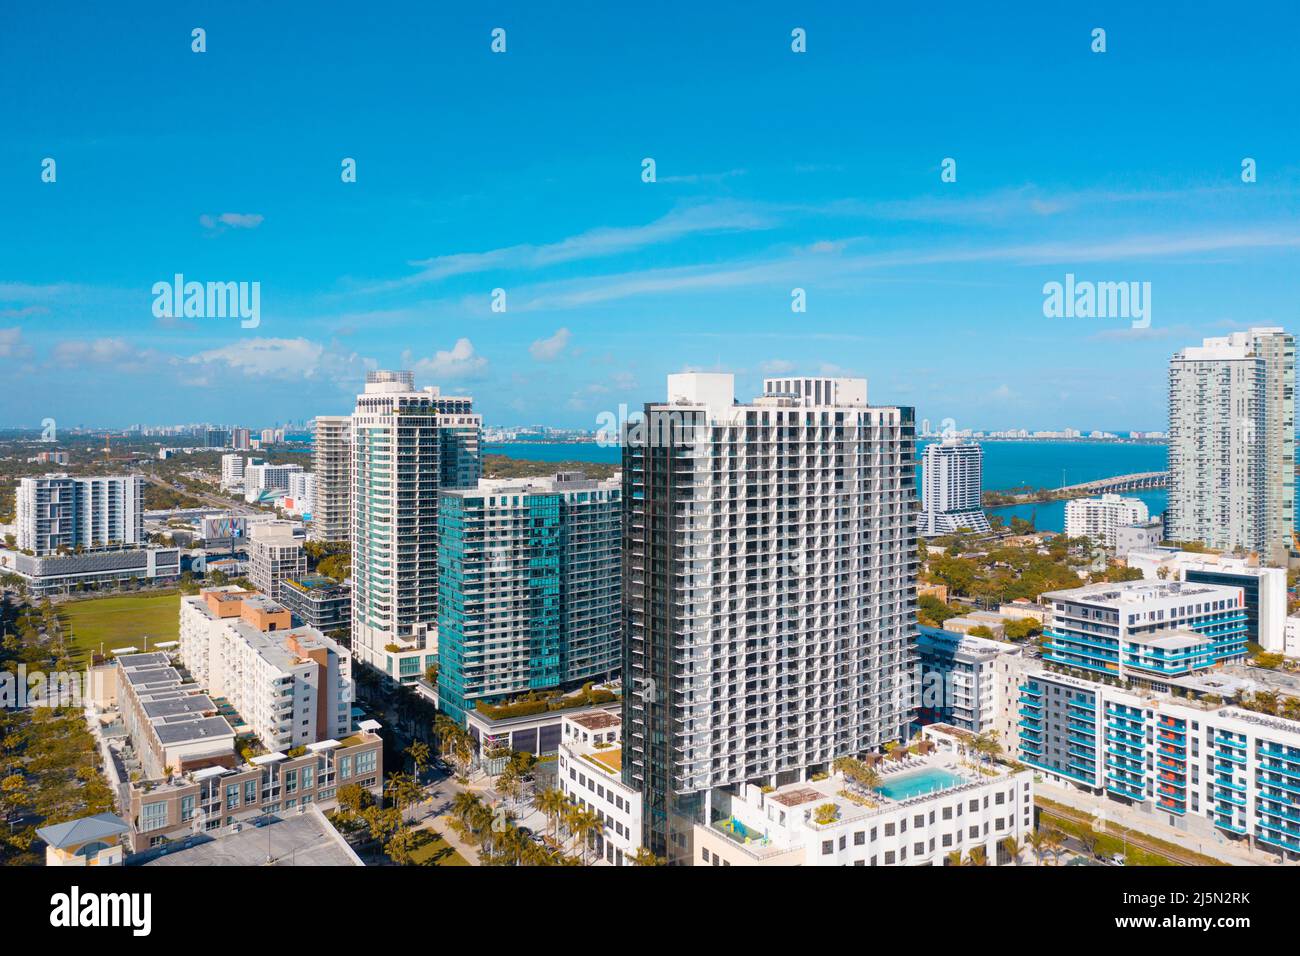 The Midtown Miami neighborhood skyline in Miami Florida Stock Photo